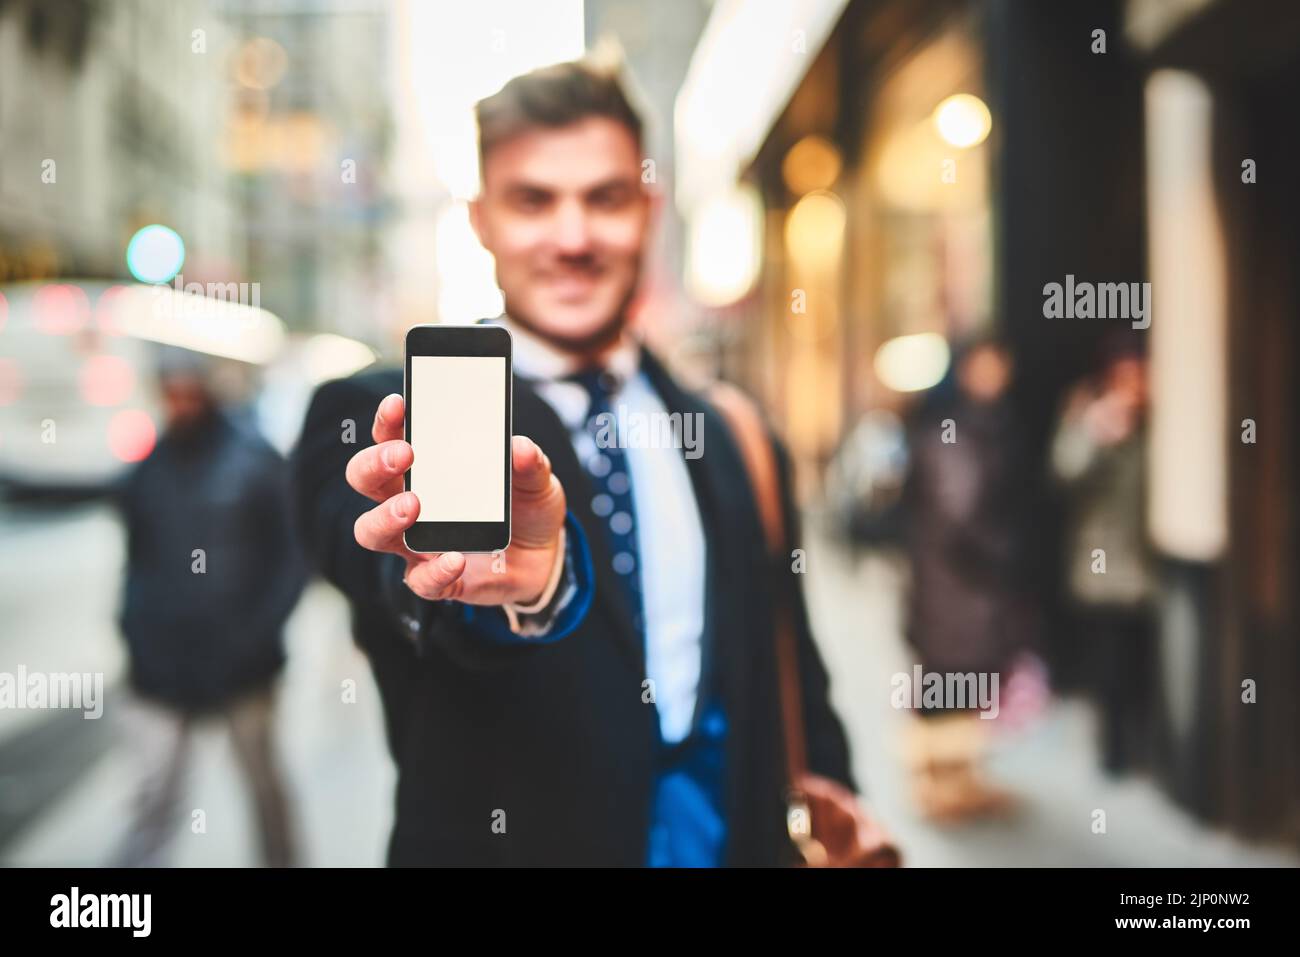 Regardez cette photo que j'ai prise de vous. Portrait d'un jeune homme joyeux tenant un téléphone portable et montrant l'écran à l'extérieur de l'appareil photo dans la ville Banque D'Images